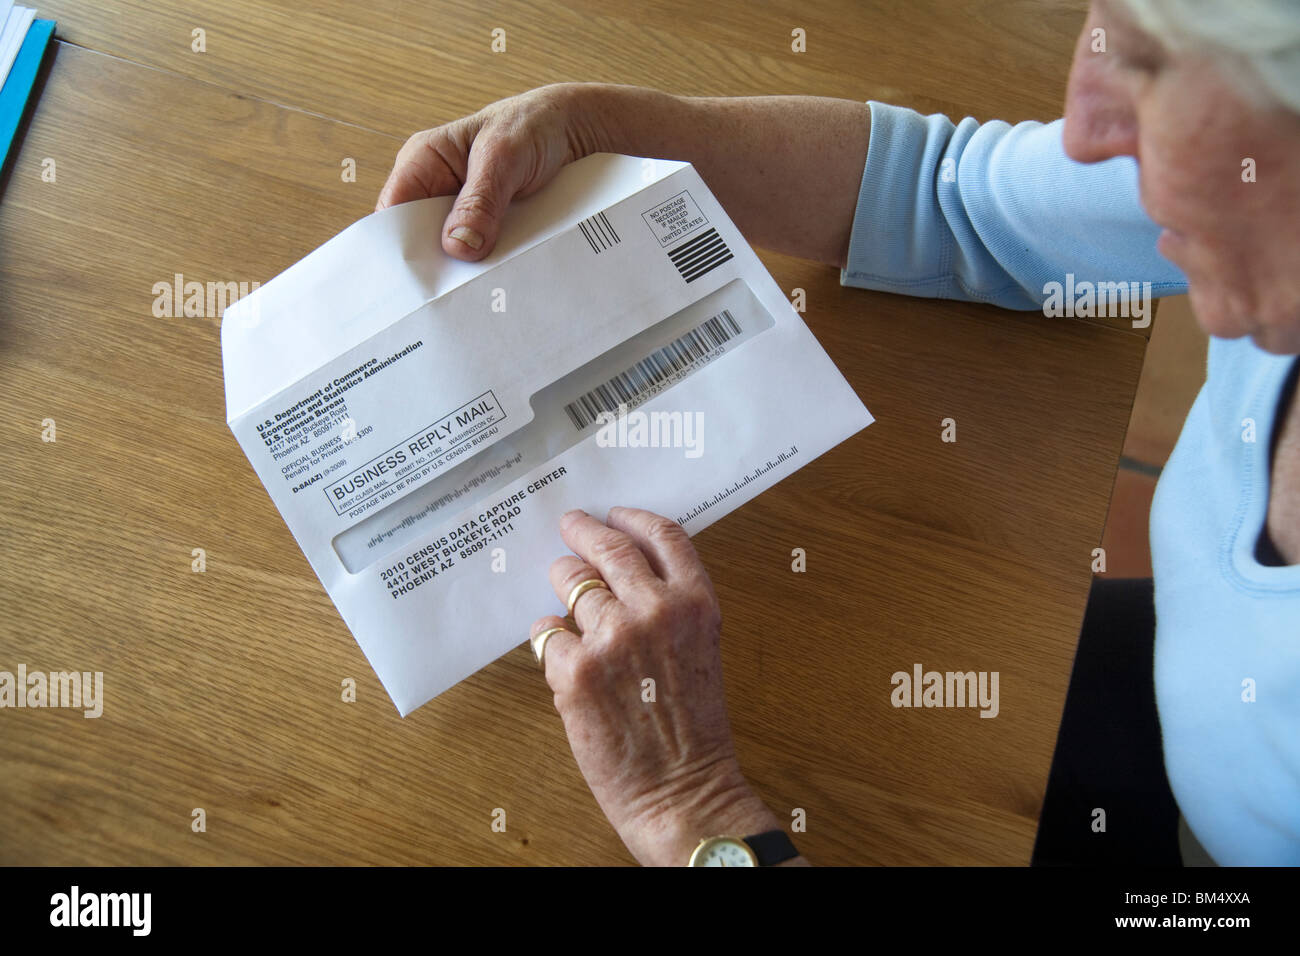 Un formulaire de recensement des Etats-Unis de 2010 formulaire est prêt à être envoyé par la poste au bureau de recensement. Remarque code barre pour le traitement. Banque D'Images